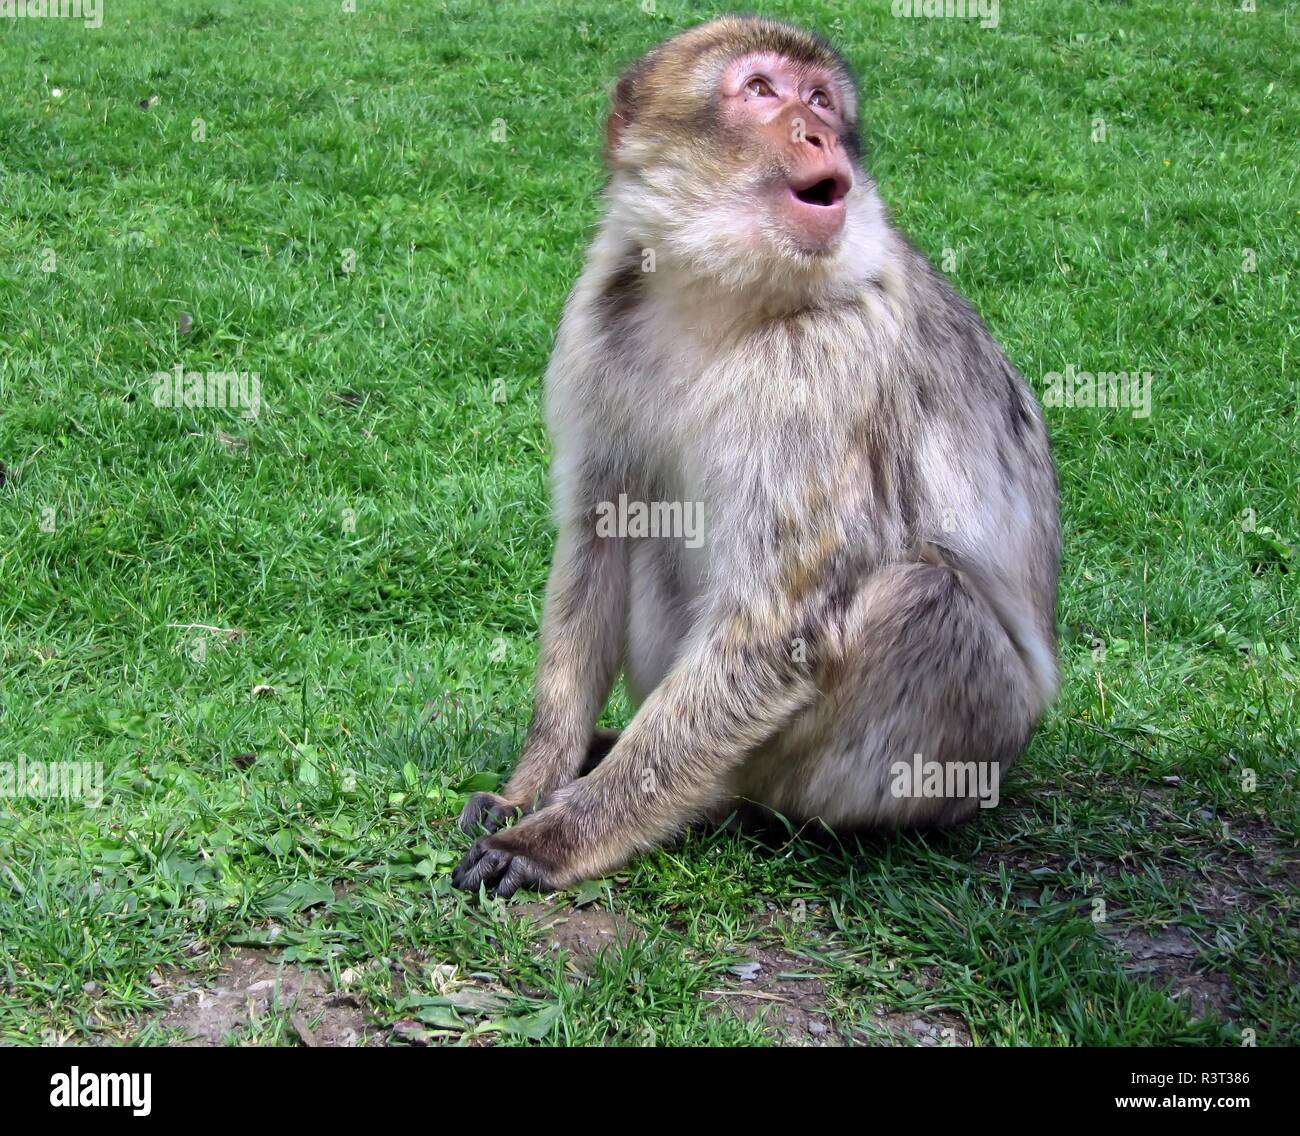 barbary ape Stock Photo